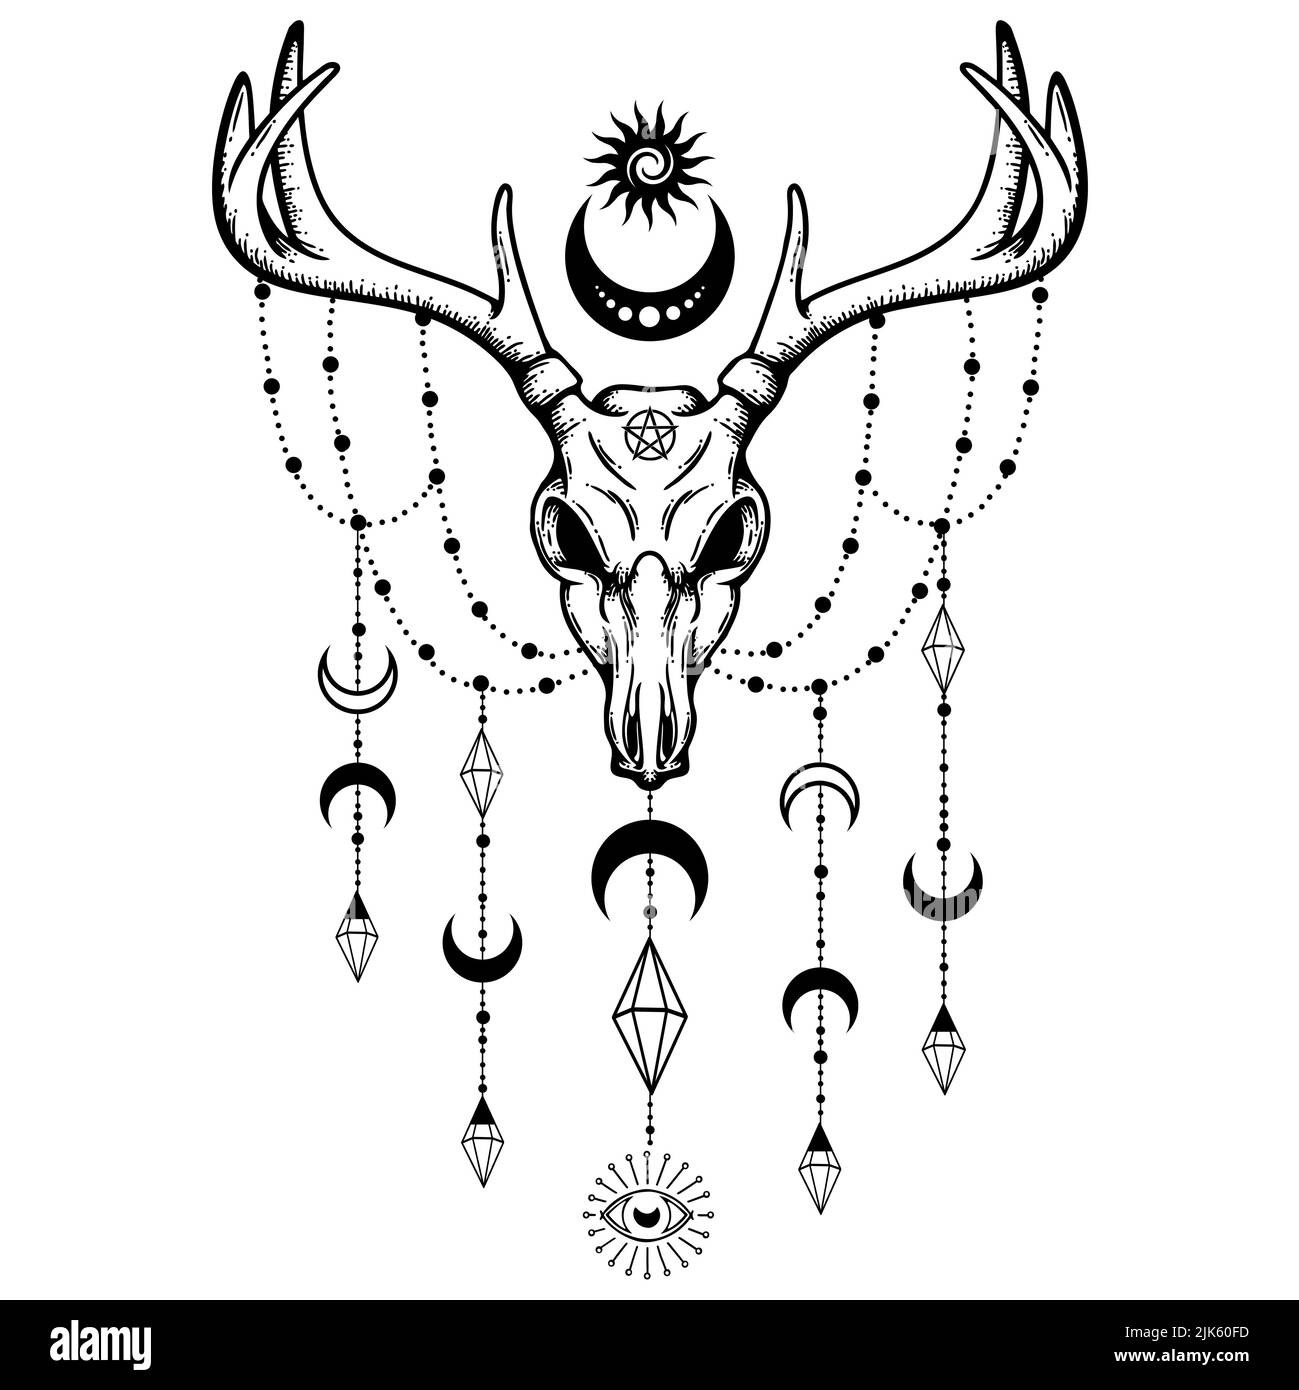 Wicca Deer Skull - Witchcraft Halloween Graphic Stock Photo